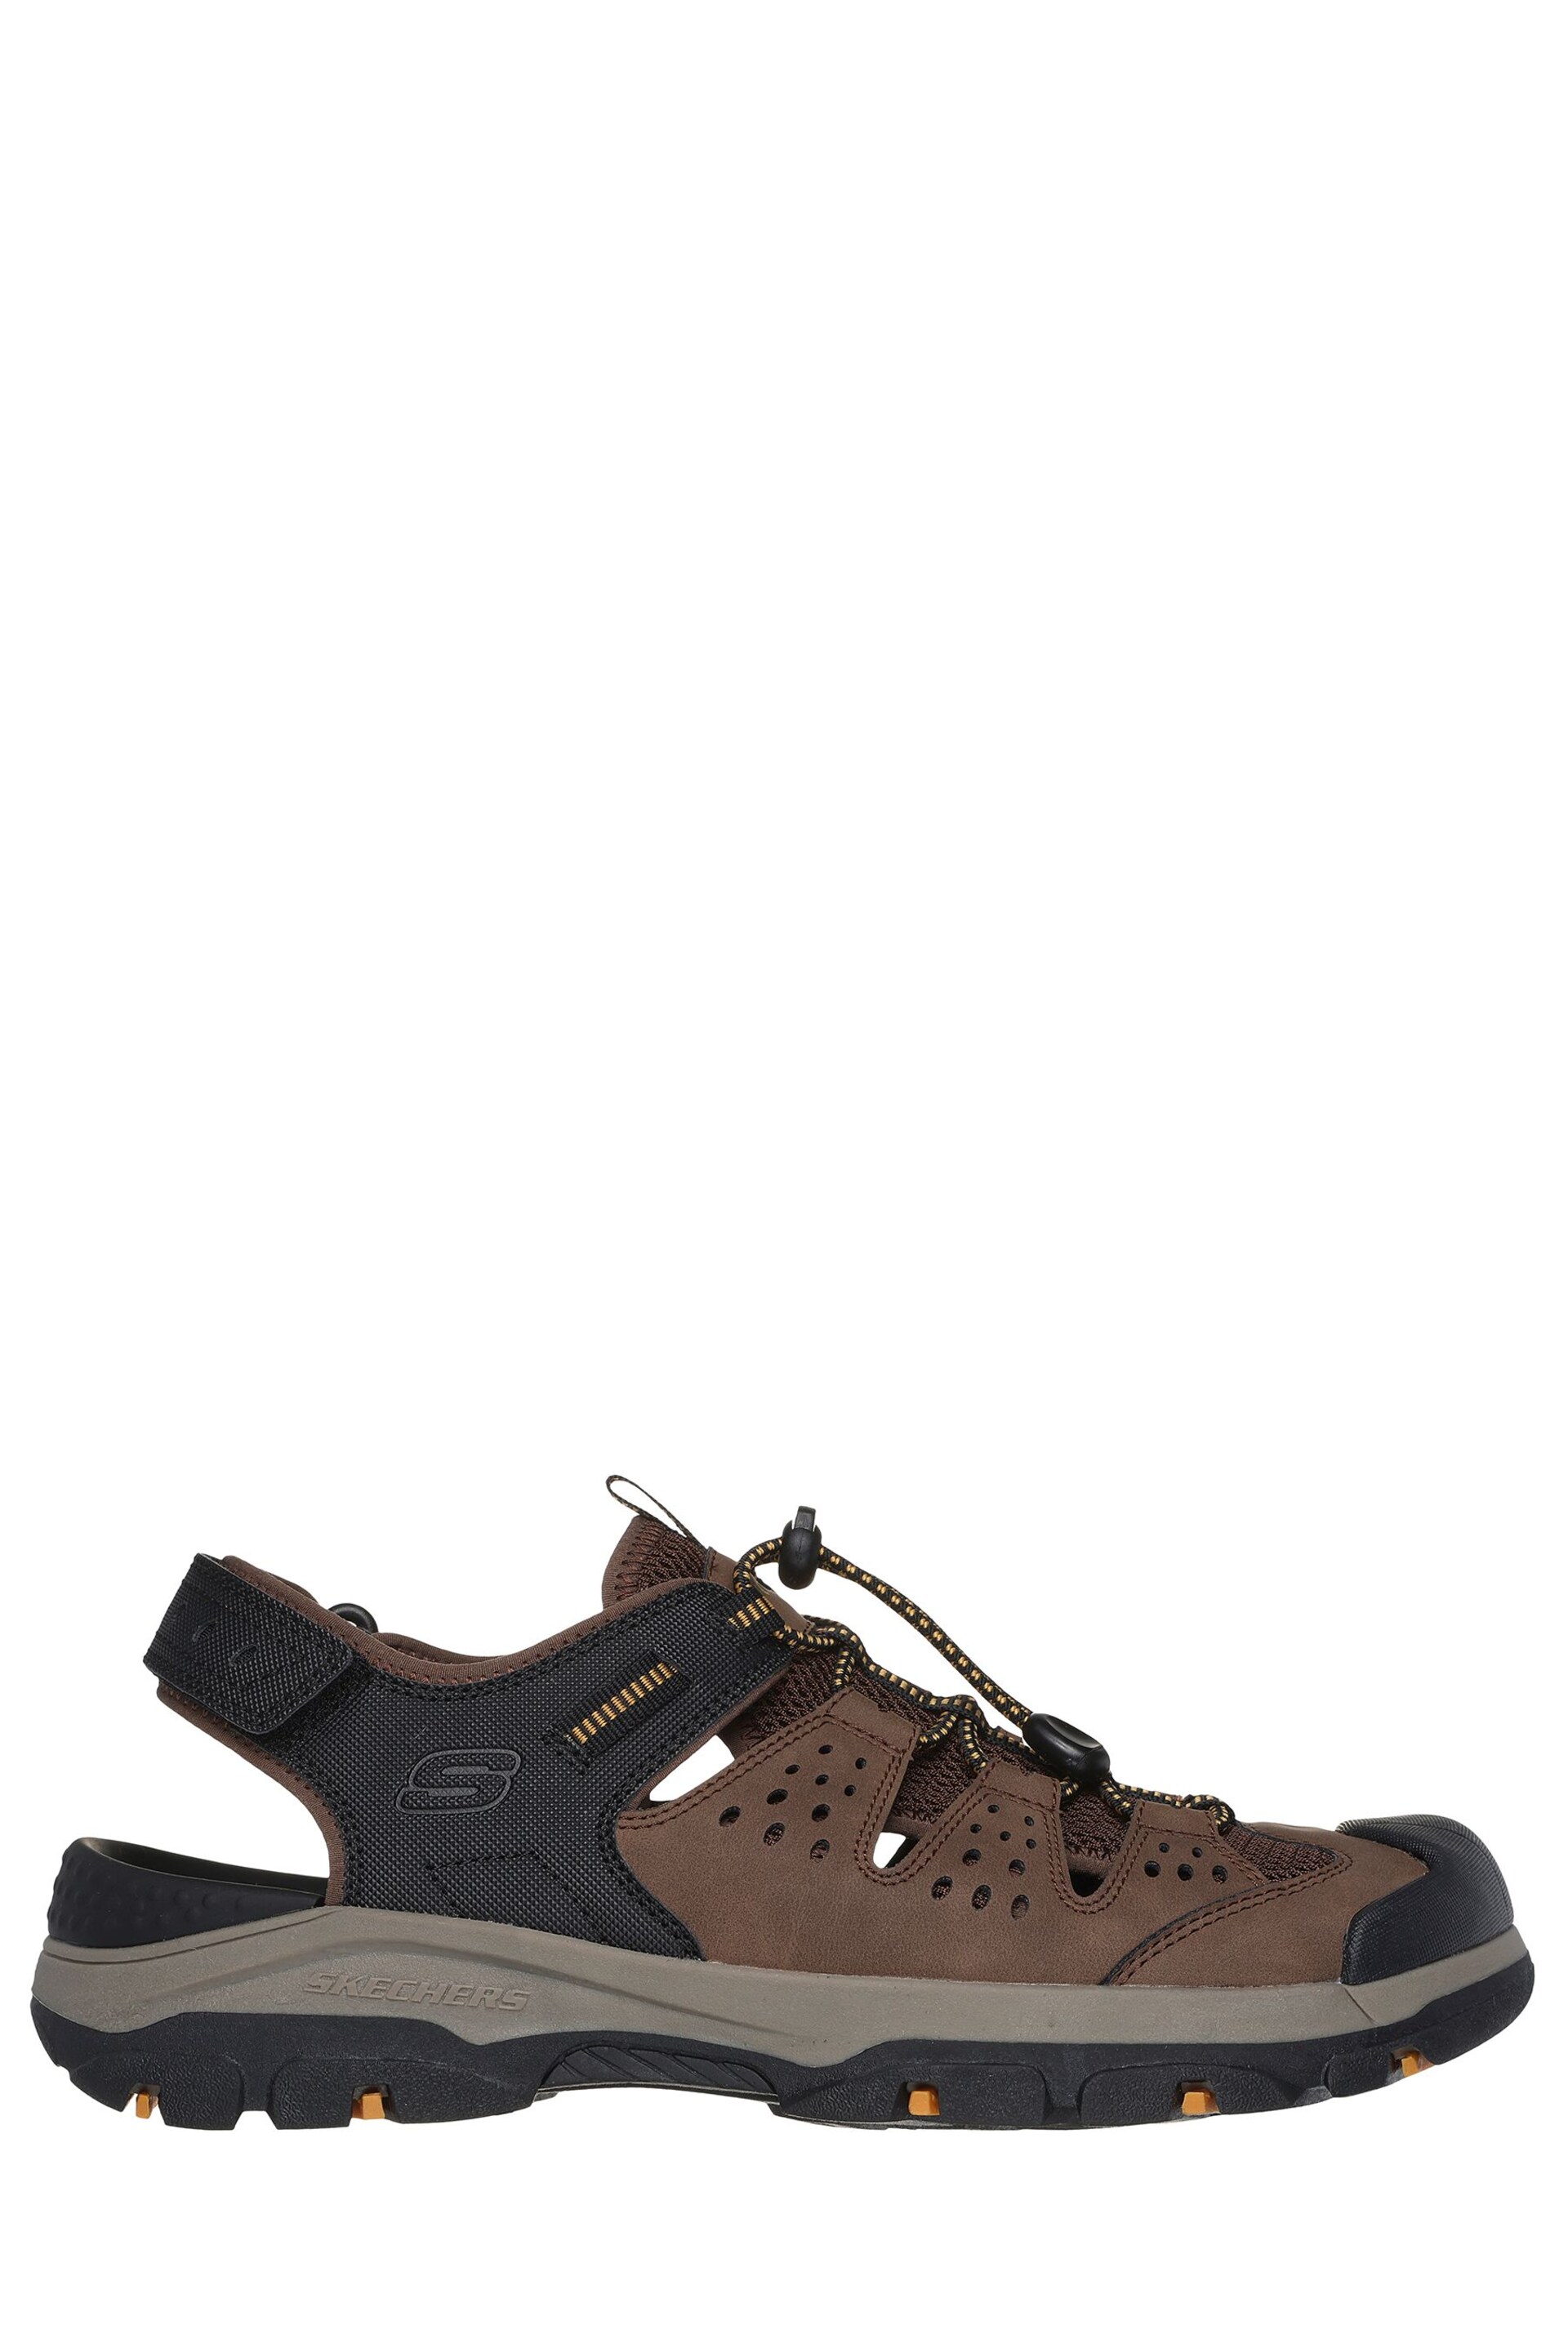 Skechers Brown Tresmen Menard Sandals - Image 1 of 4